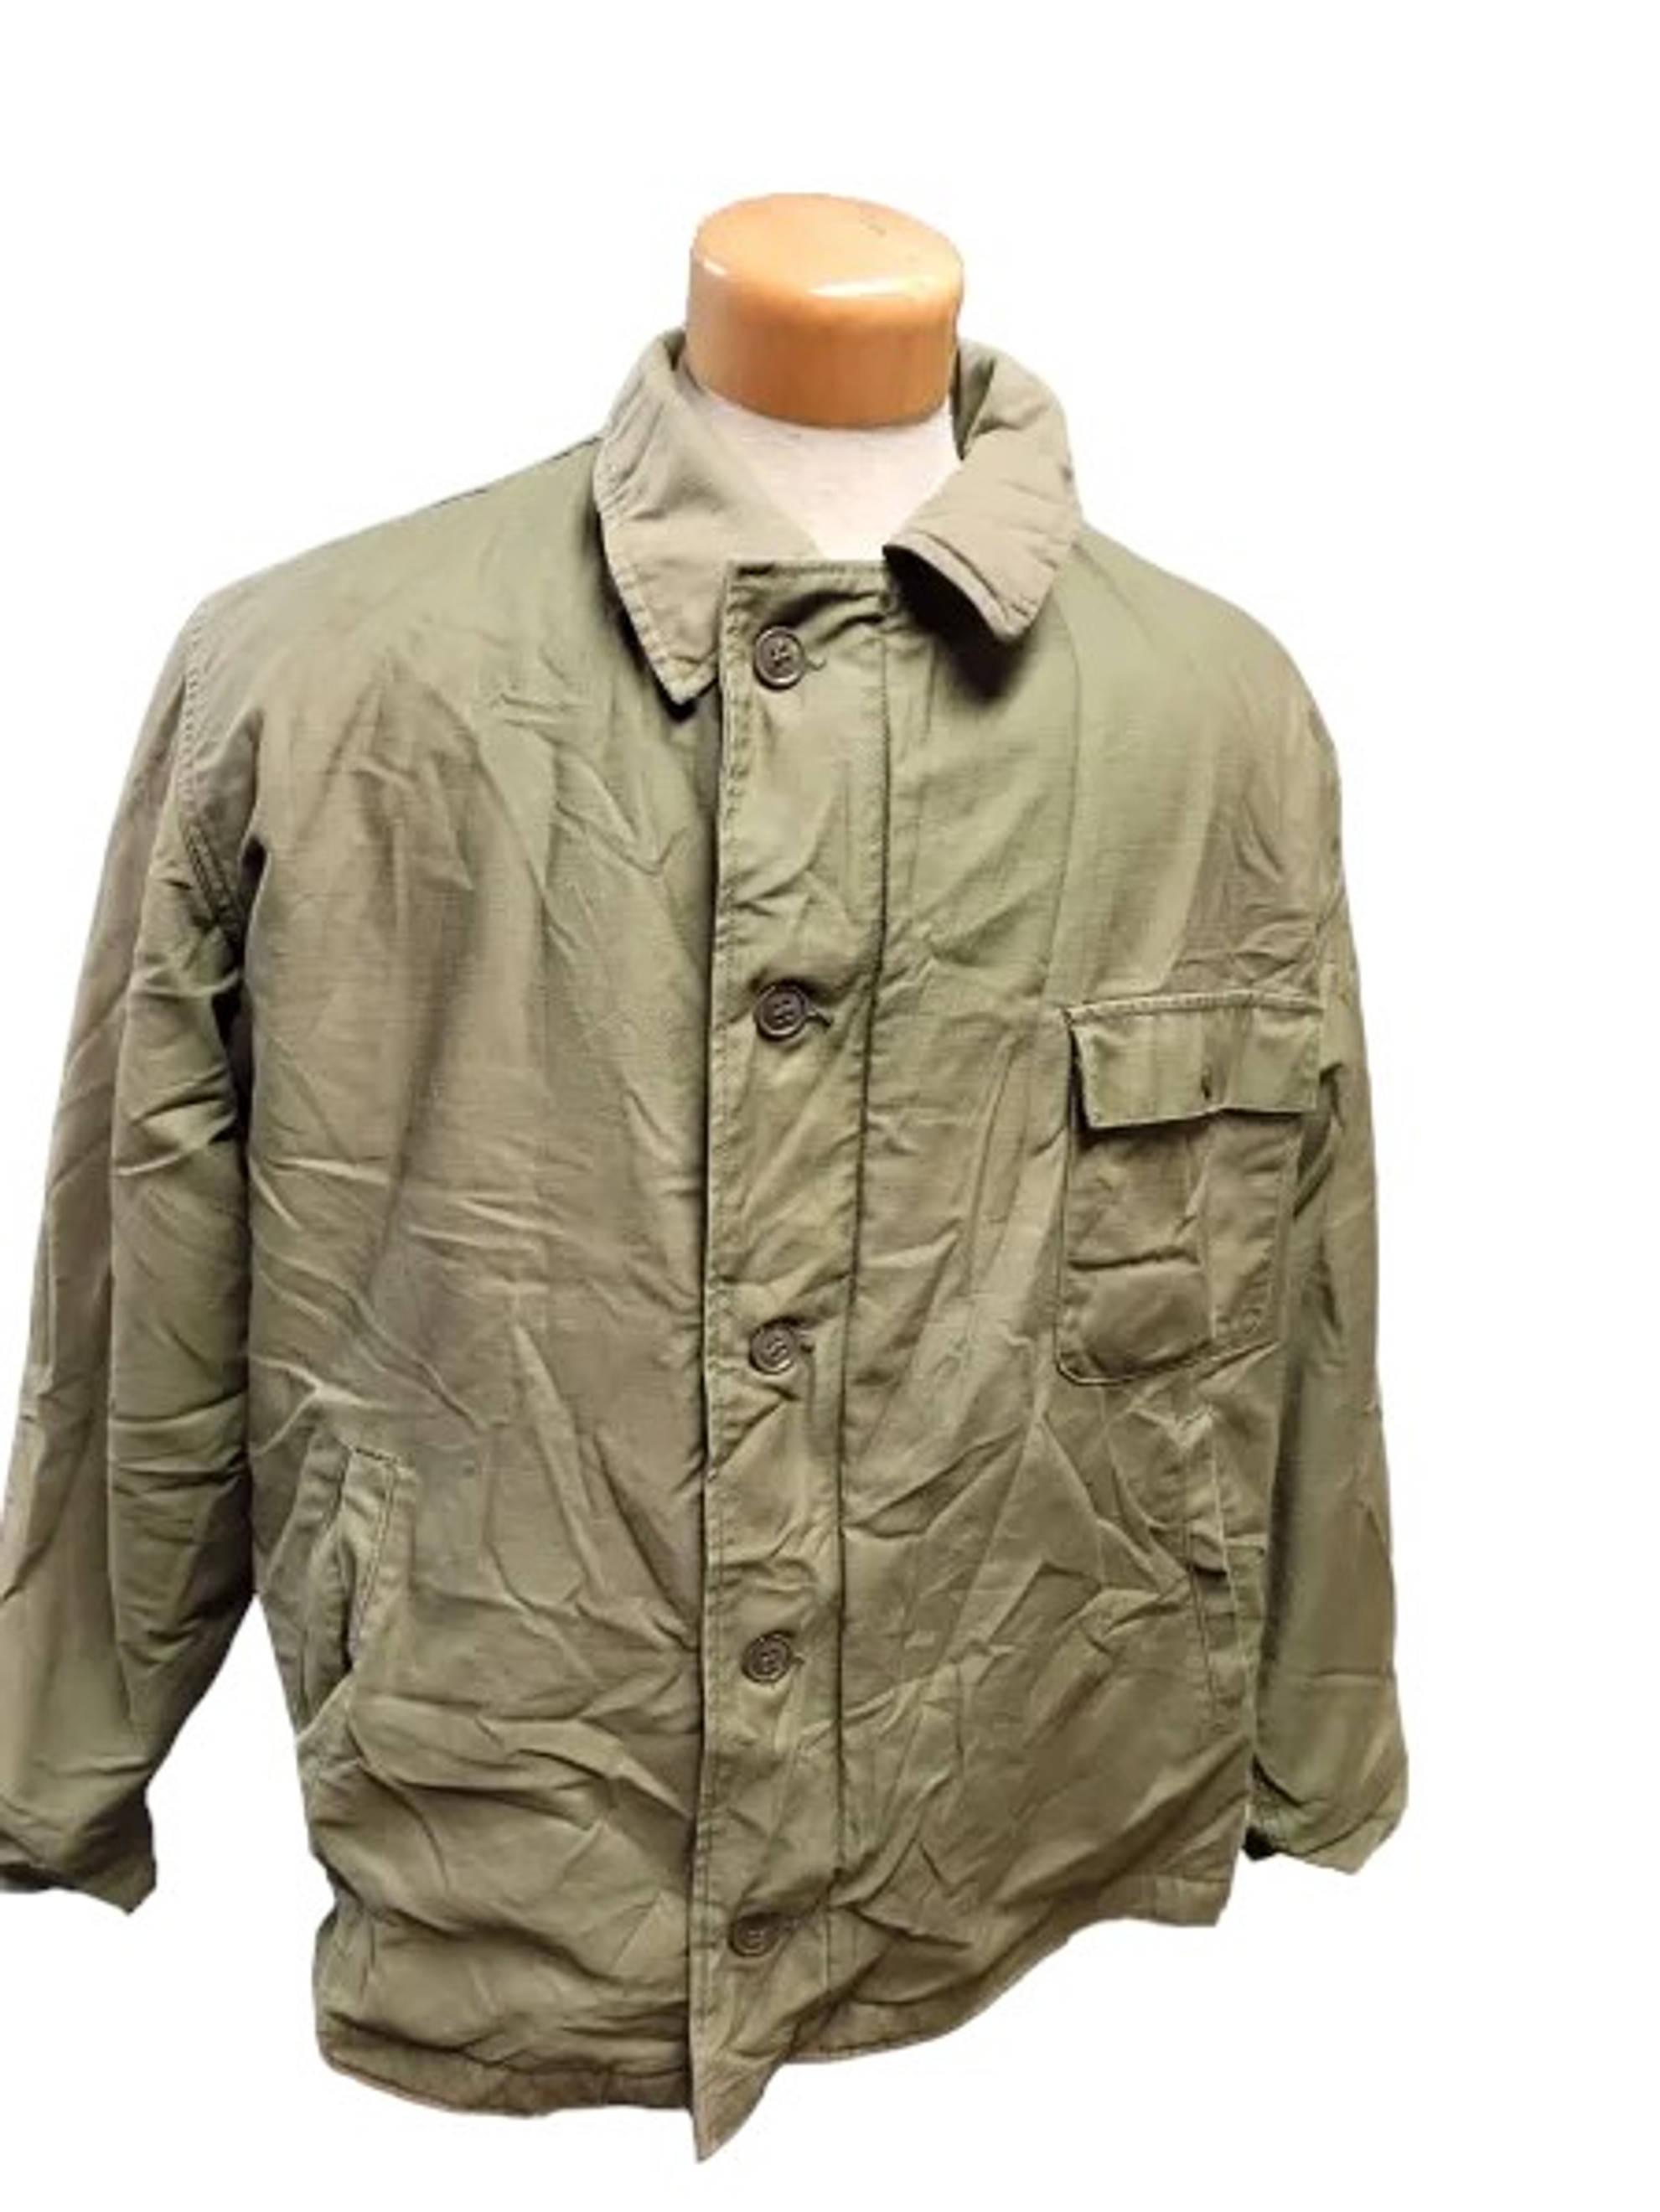 Vintage U.S. Armed Forces - Cold Weather Deck Jacket